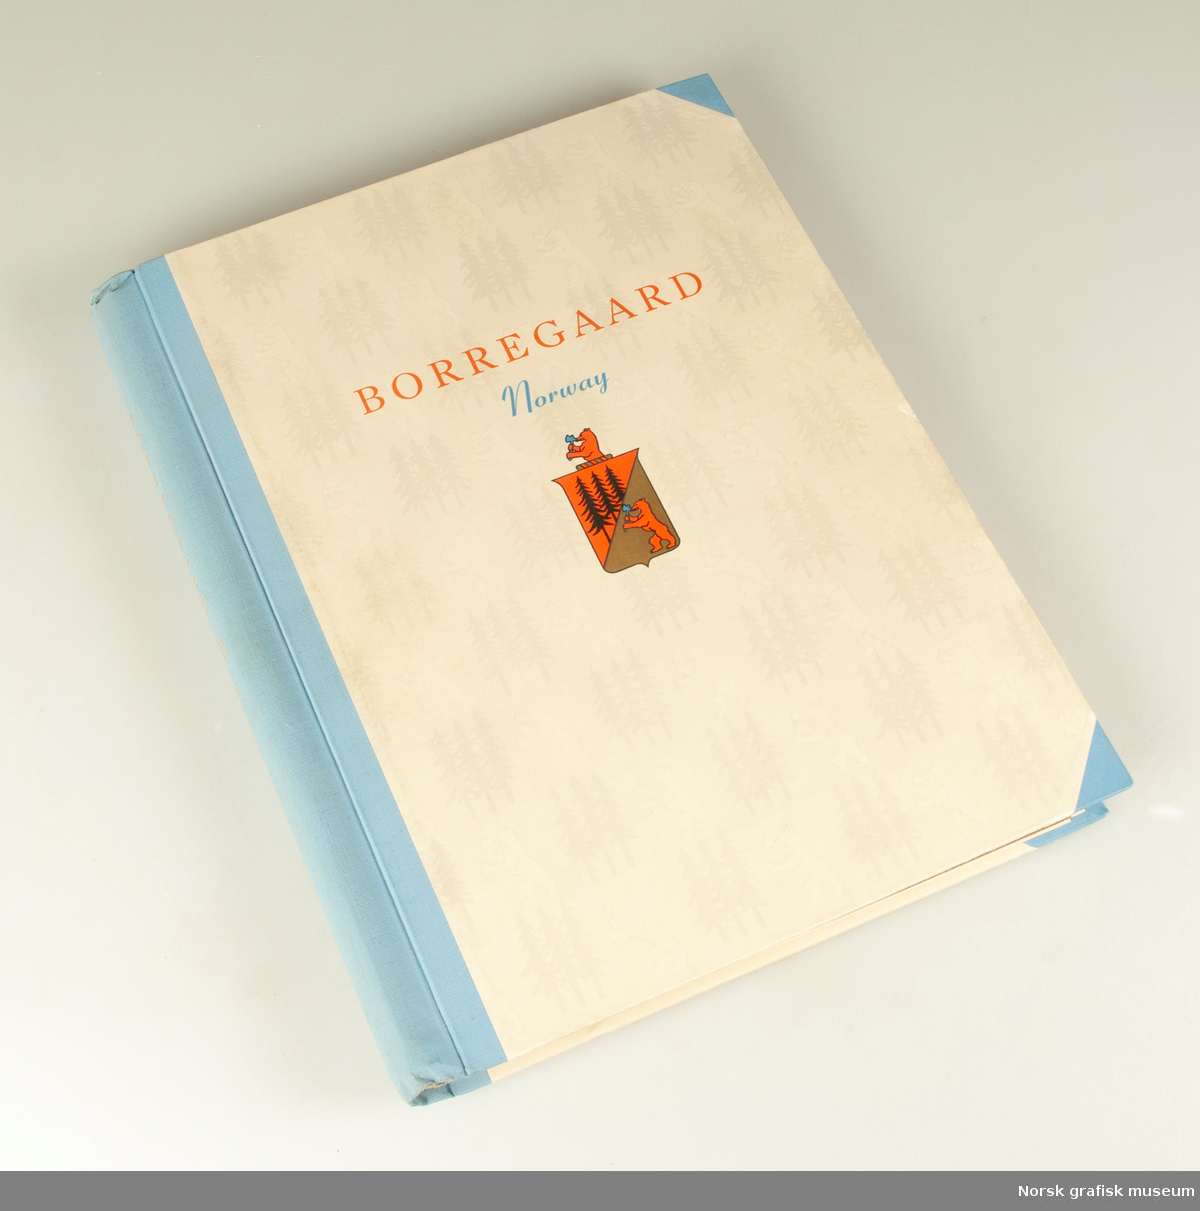 Spiralinnbundet bok som beskriver flere av papirkvalitene tilgjenglig hos Borregaard. Boken er rikt dekorert, både på omslag og innvendig, og har tekster på både engelsk og spansk. 

Boken er lagret i en enkel kassett i hvit kartong.